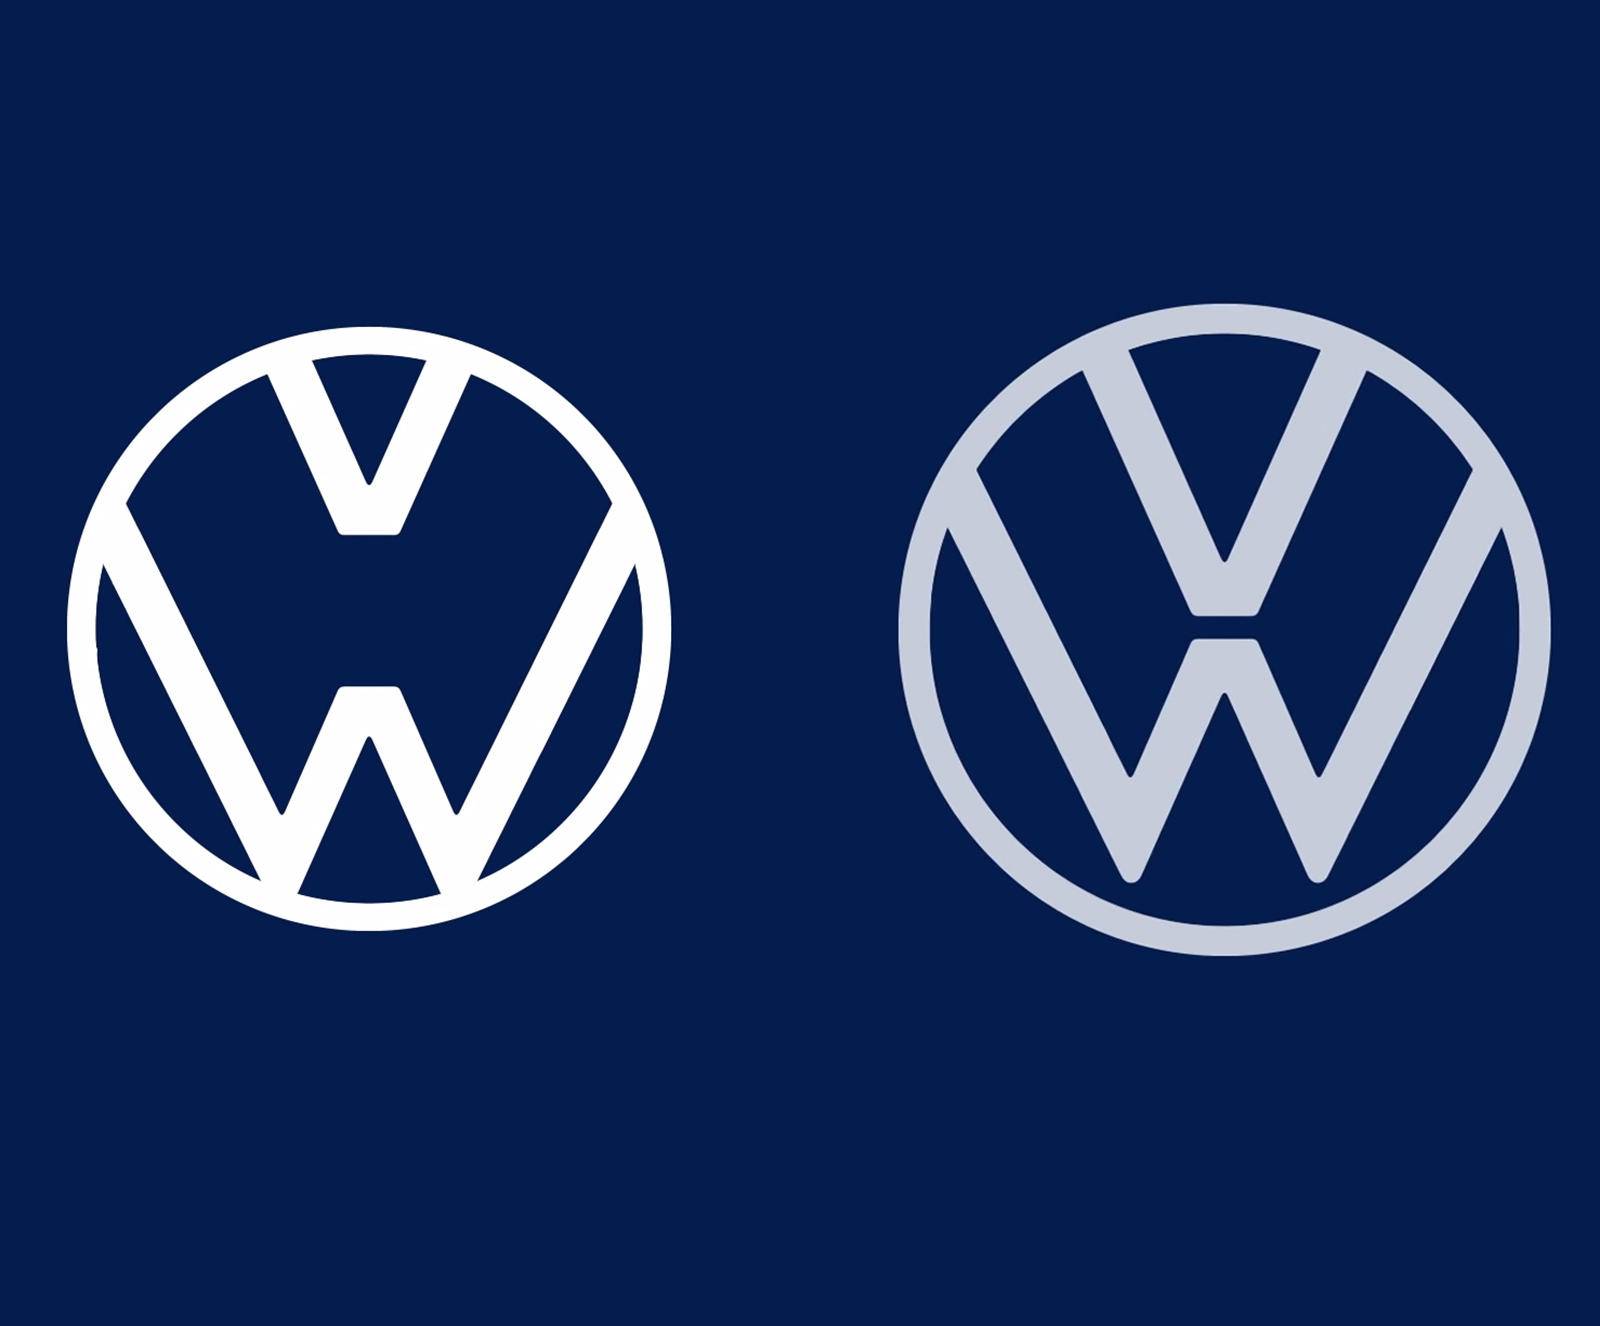 Važno je držati razmak, a zato je i Volkswagen promijenio logo